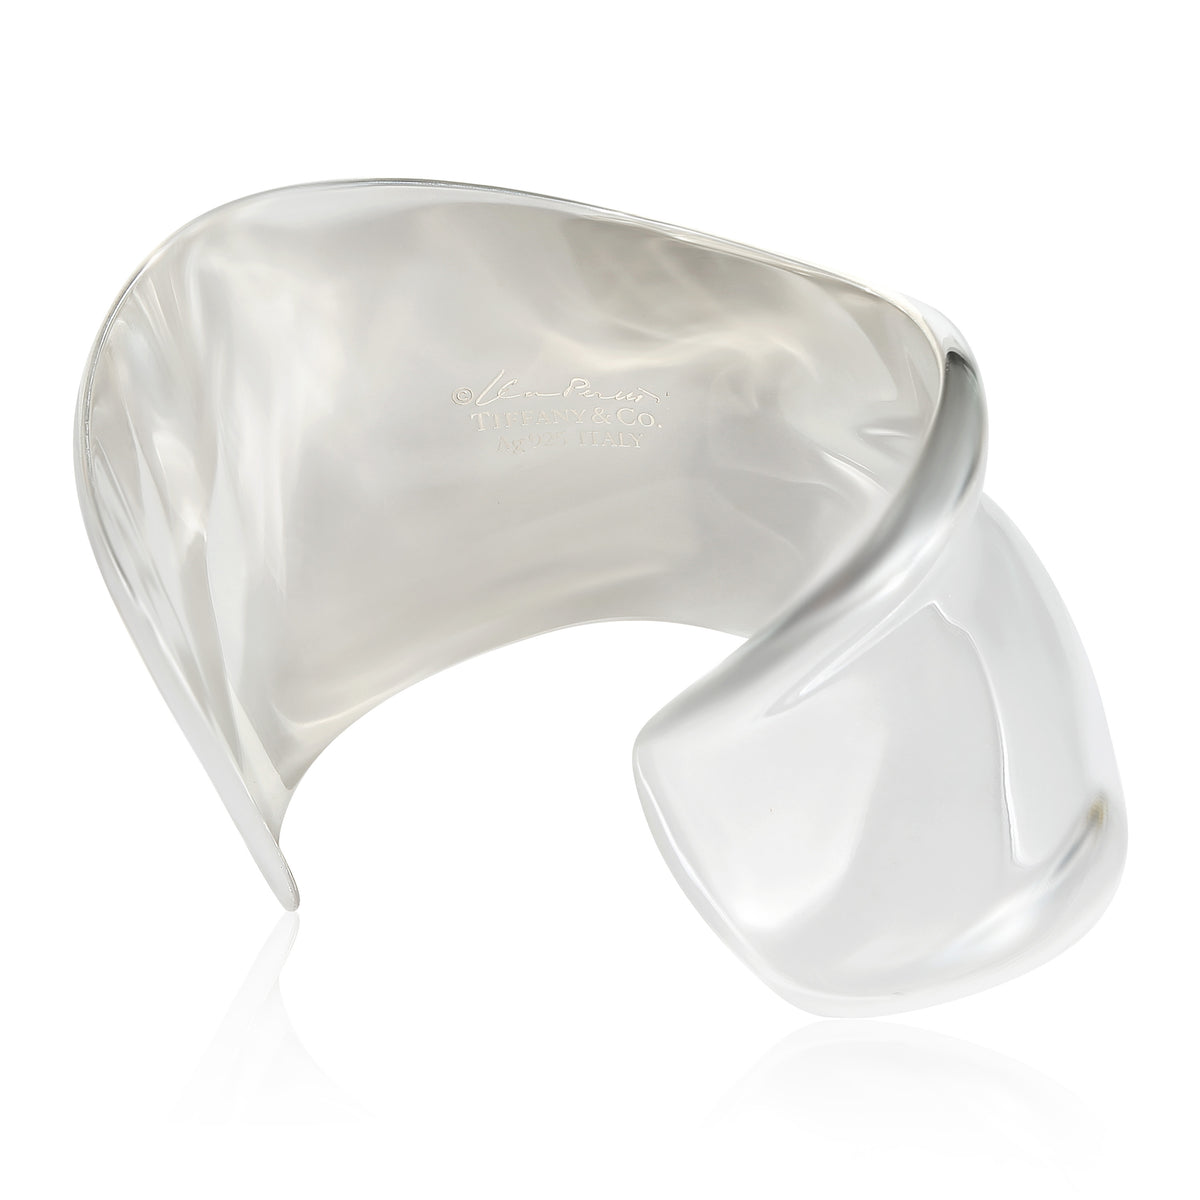 Tiffany & Co. Elsa Peretti Right Wrist Bone Cuff in Sterling Silver, Size Small